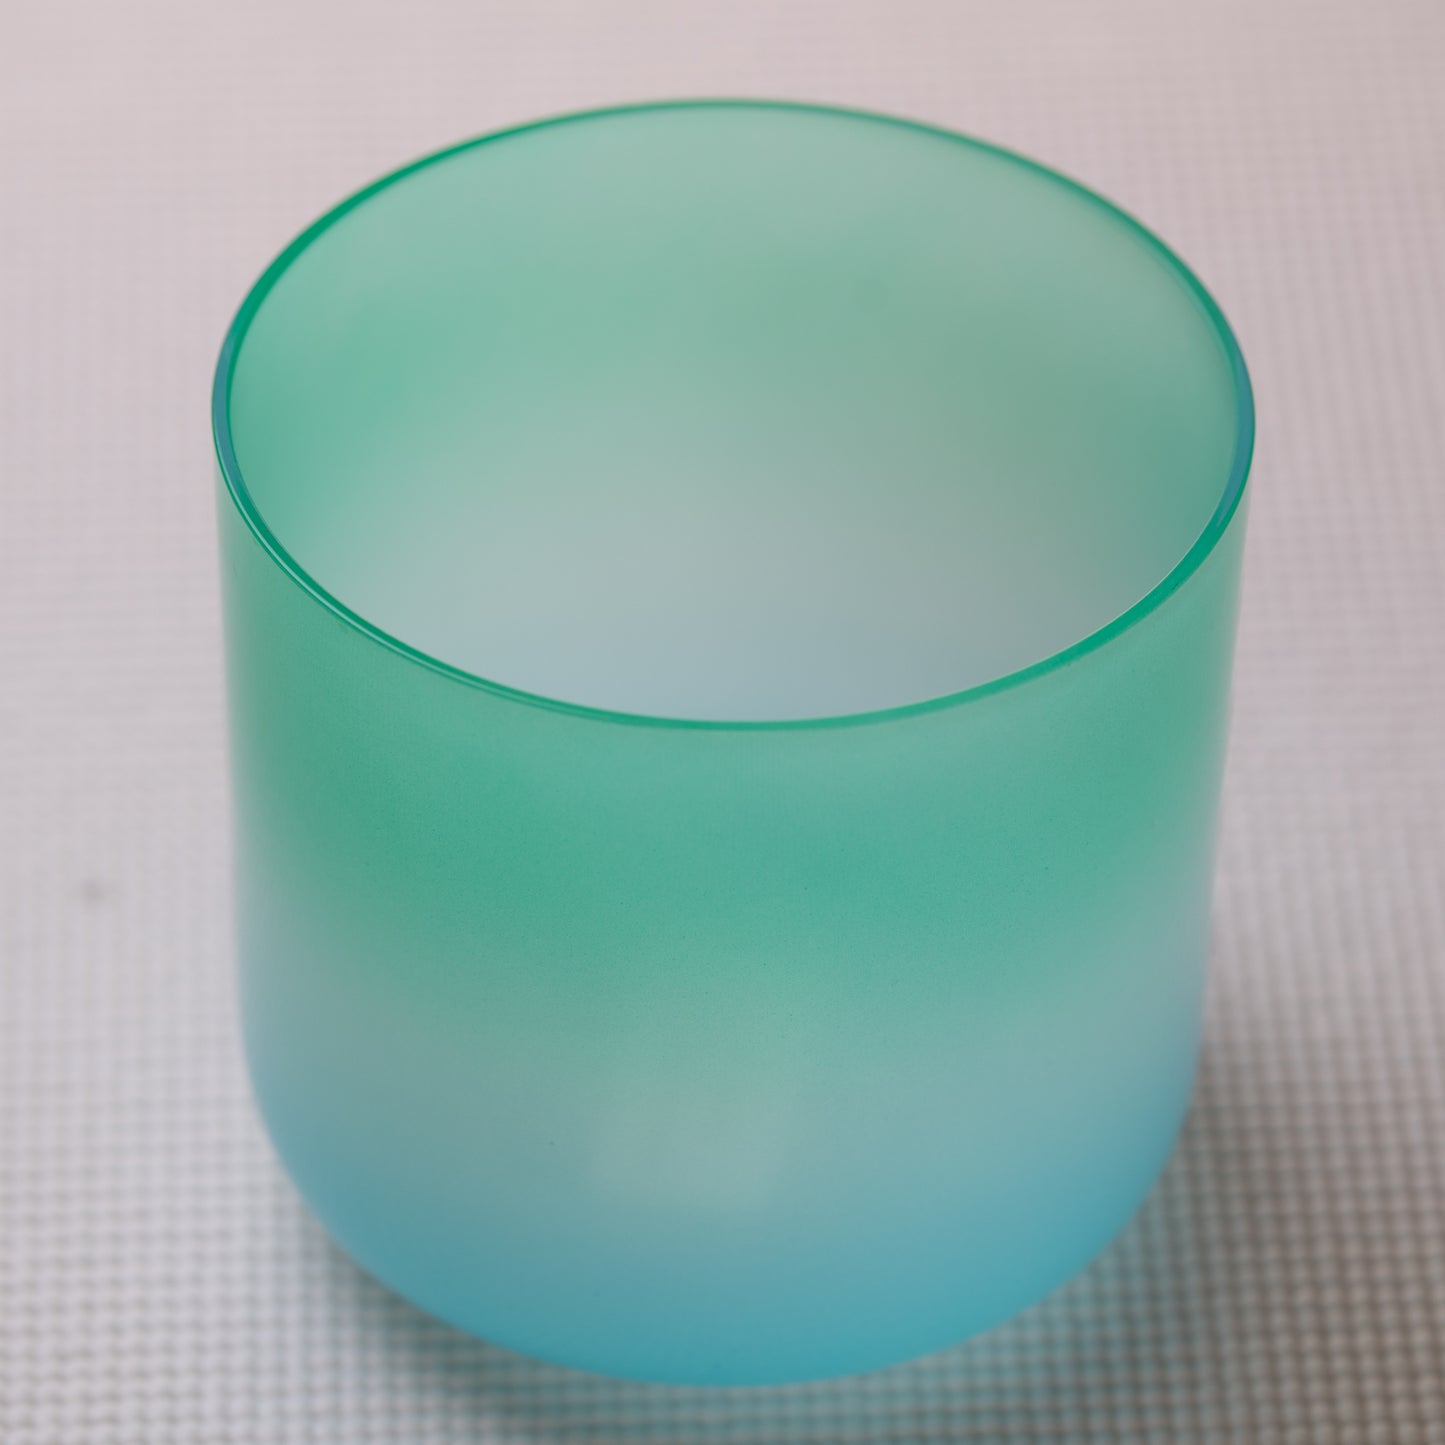 5.25" C-35 Blue Green Tourmaline Color Crystal Singing Bowl, Sacred Singing Bowls